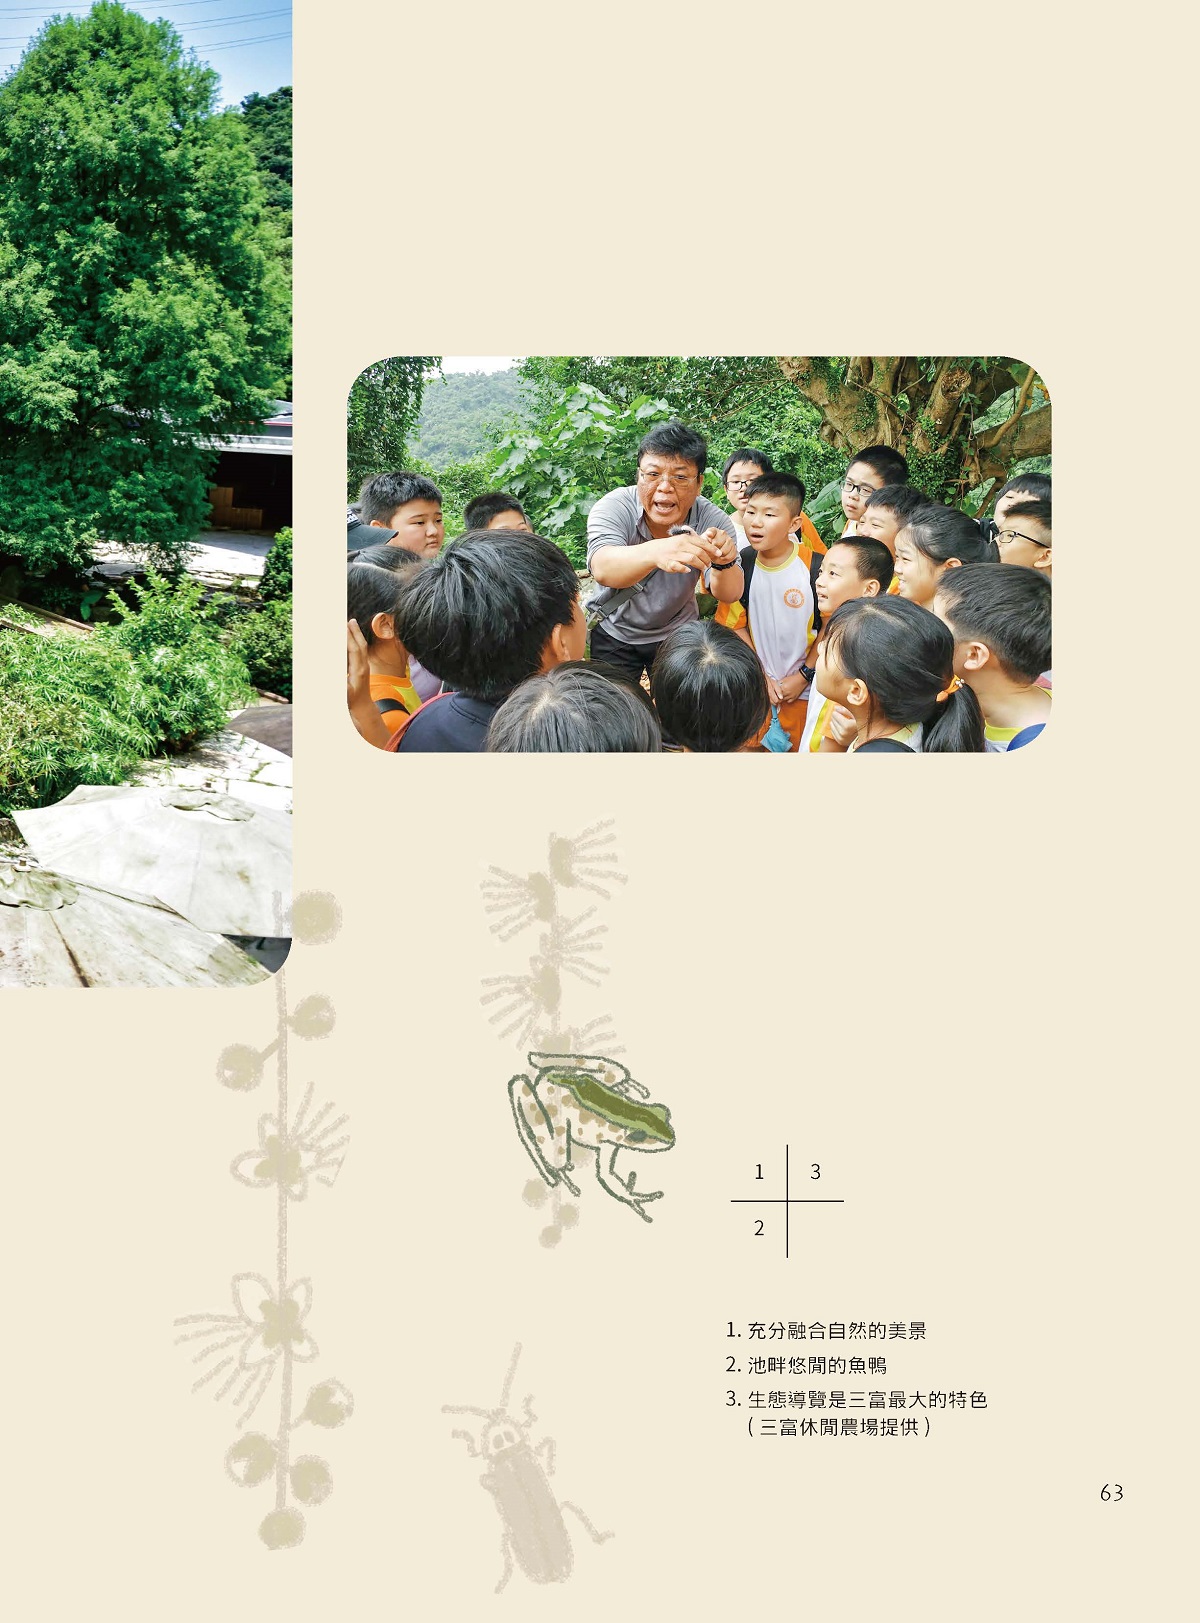 「大自然是寶藏」—可休閒‧可生態‧可挑戰—三富休閒農場（Sanfu Leisure Farm）-6